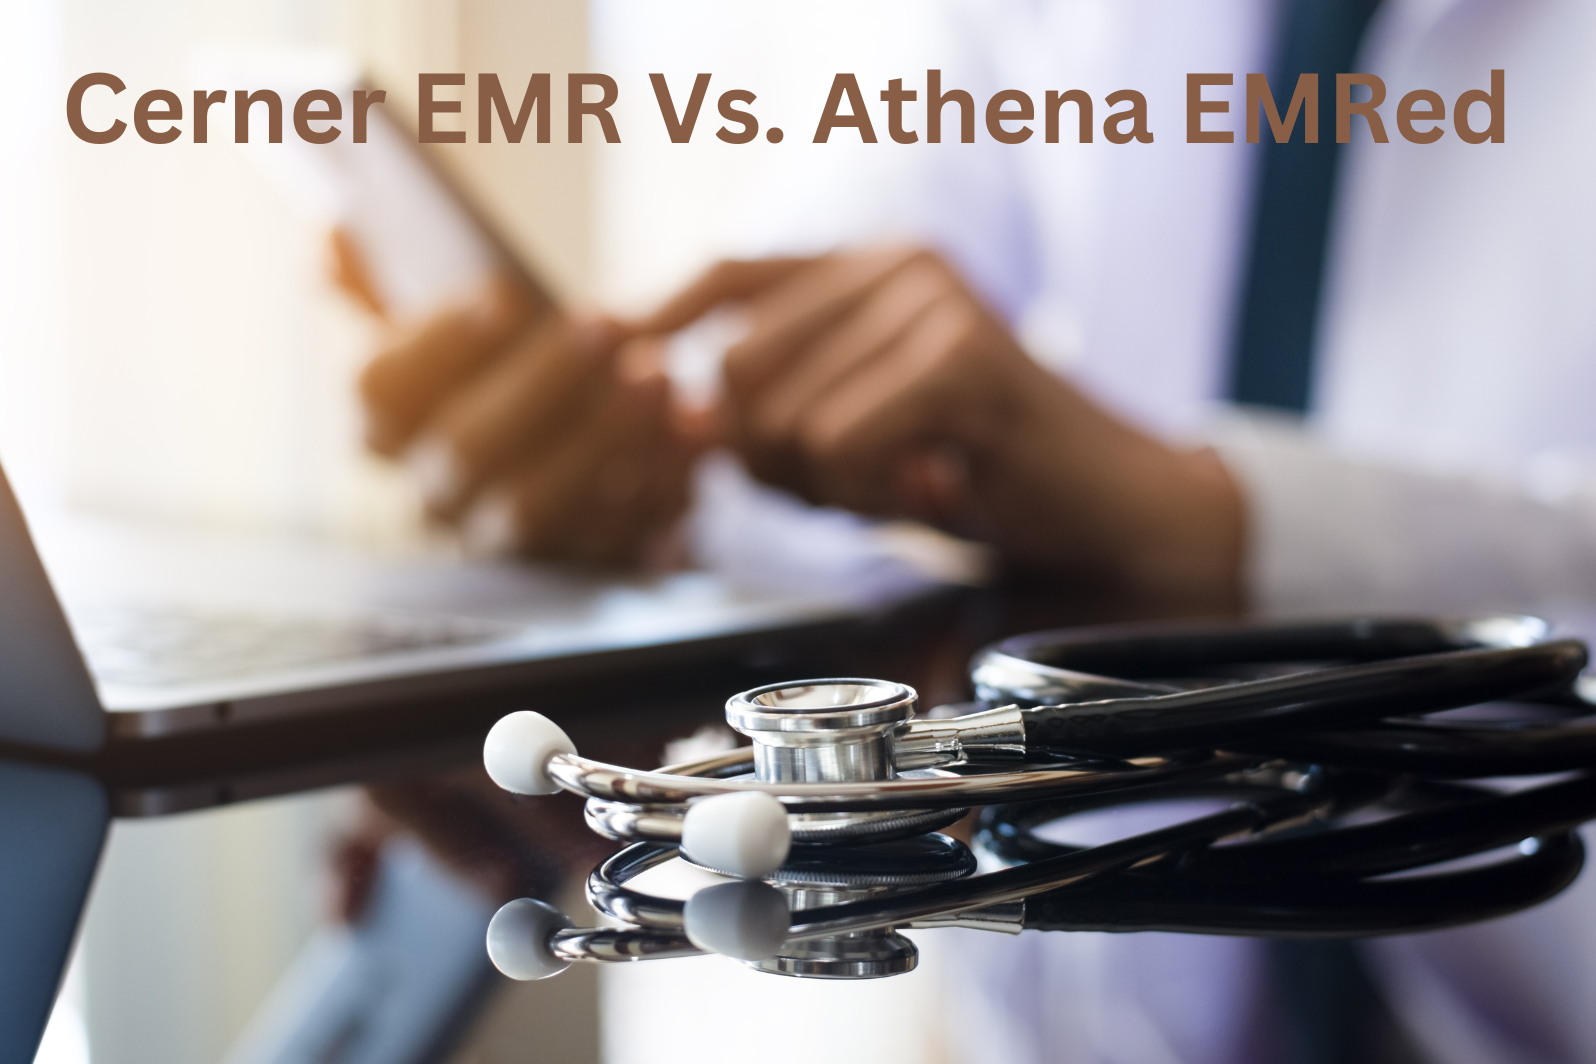 Cerner EMR Vs. athena EMR: The Healthcare Software You Need